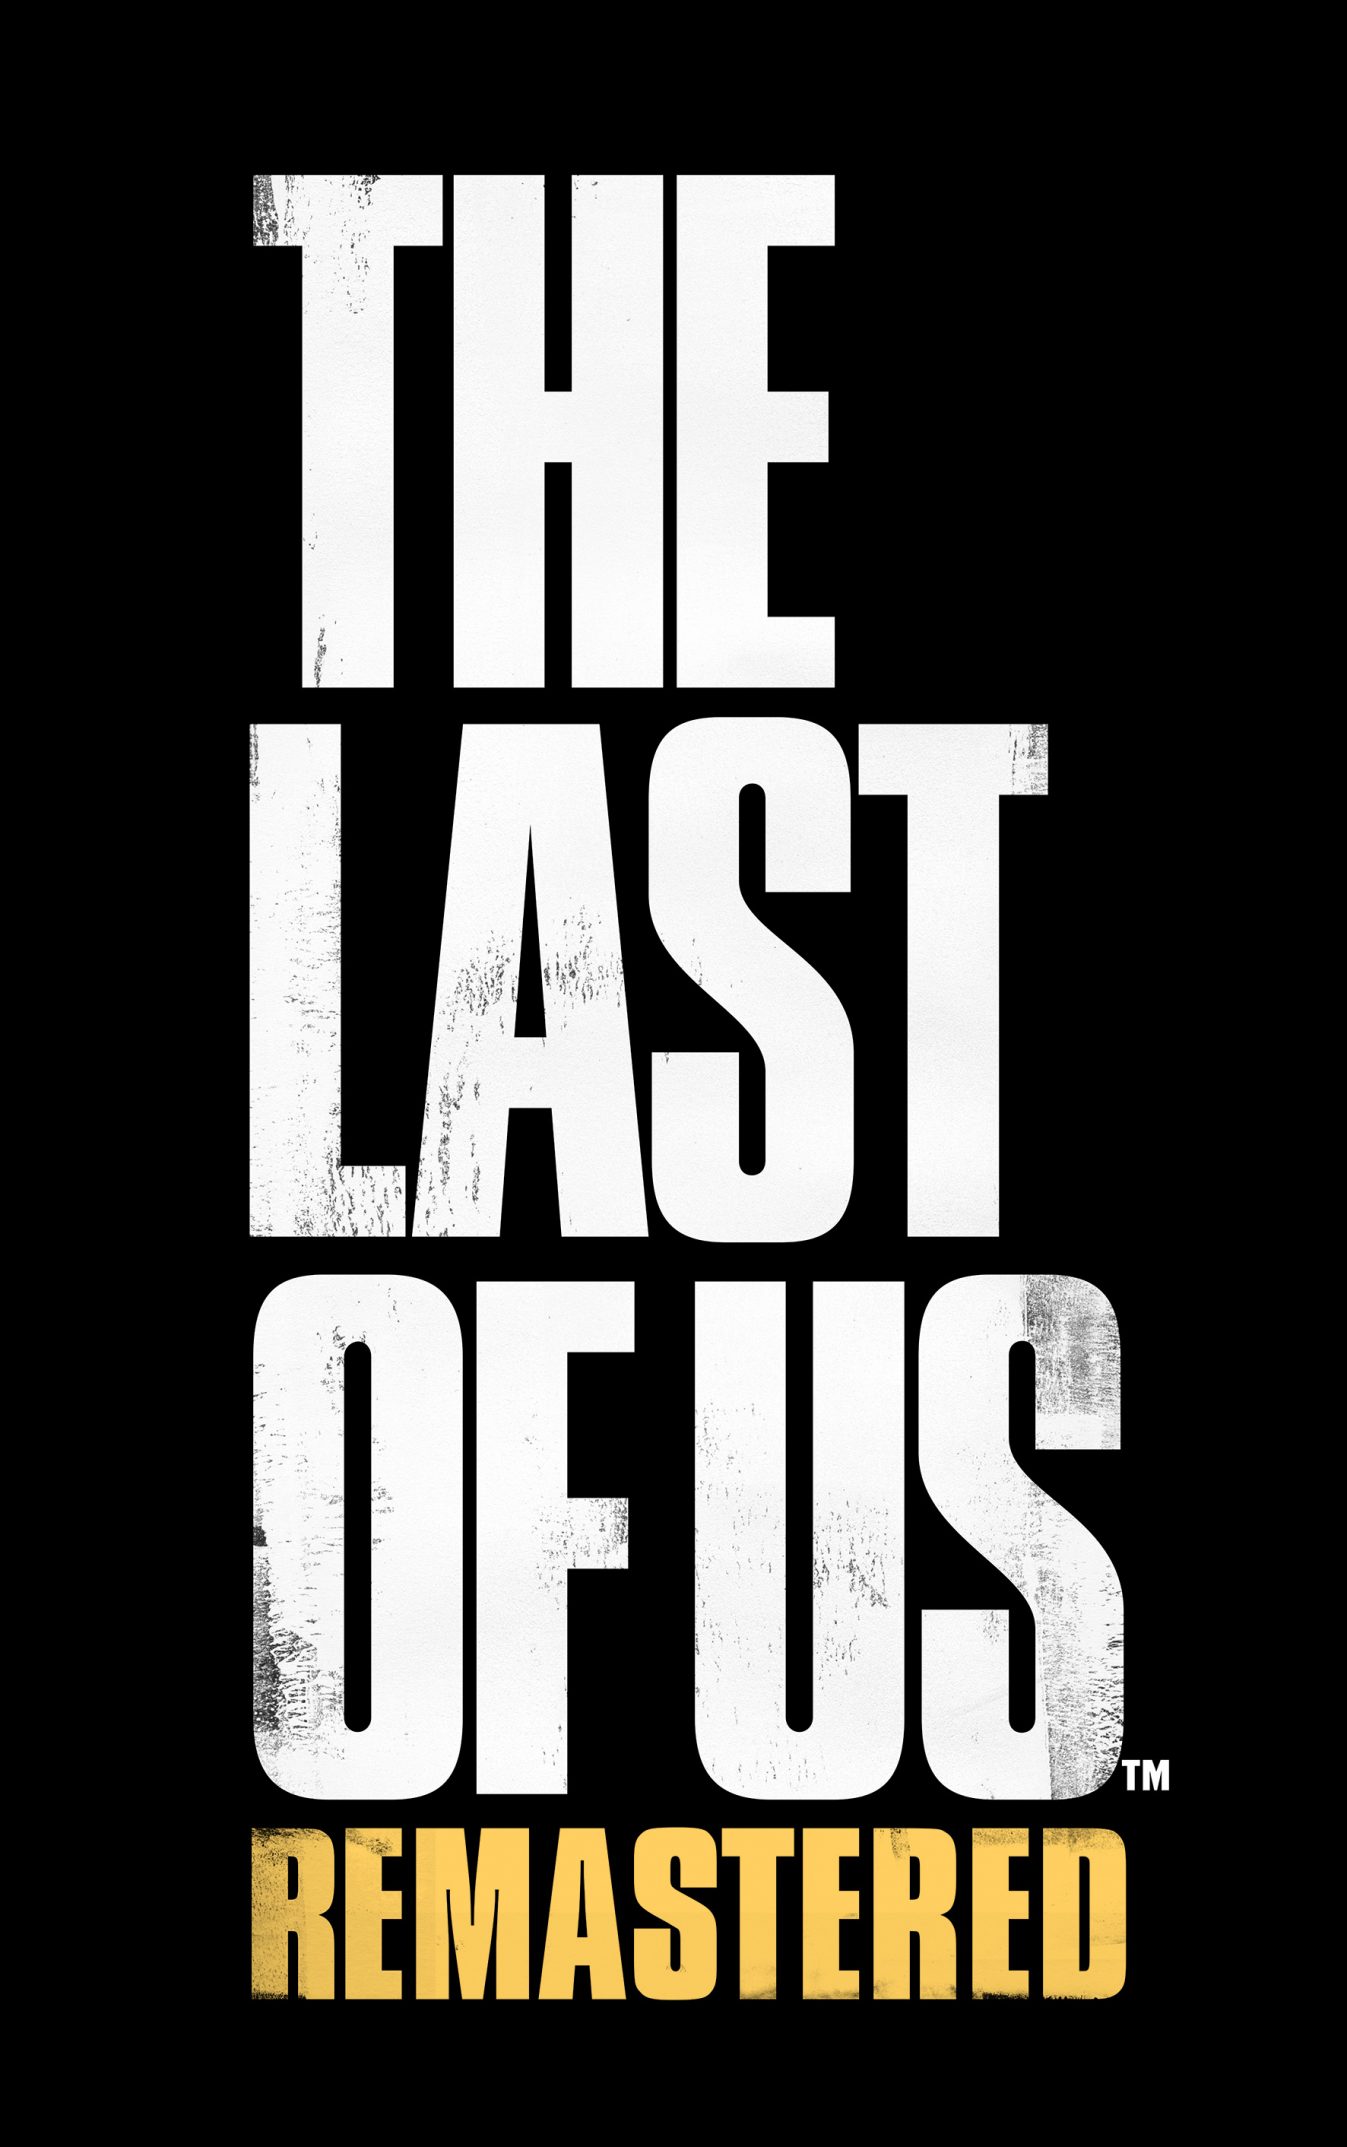 The Last of US sur PS4 : c'est officiel !